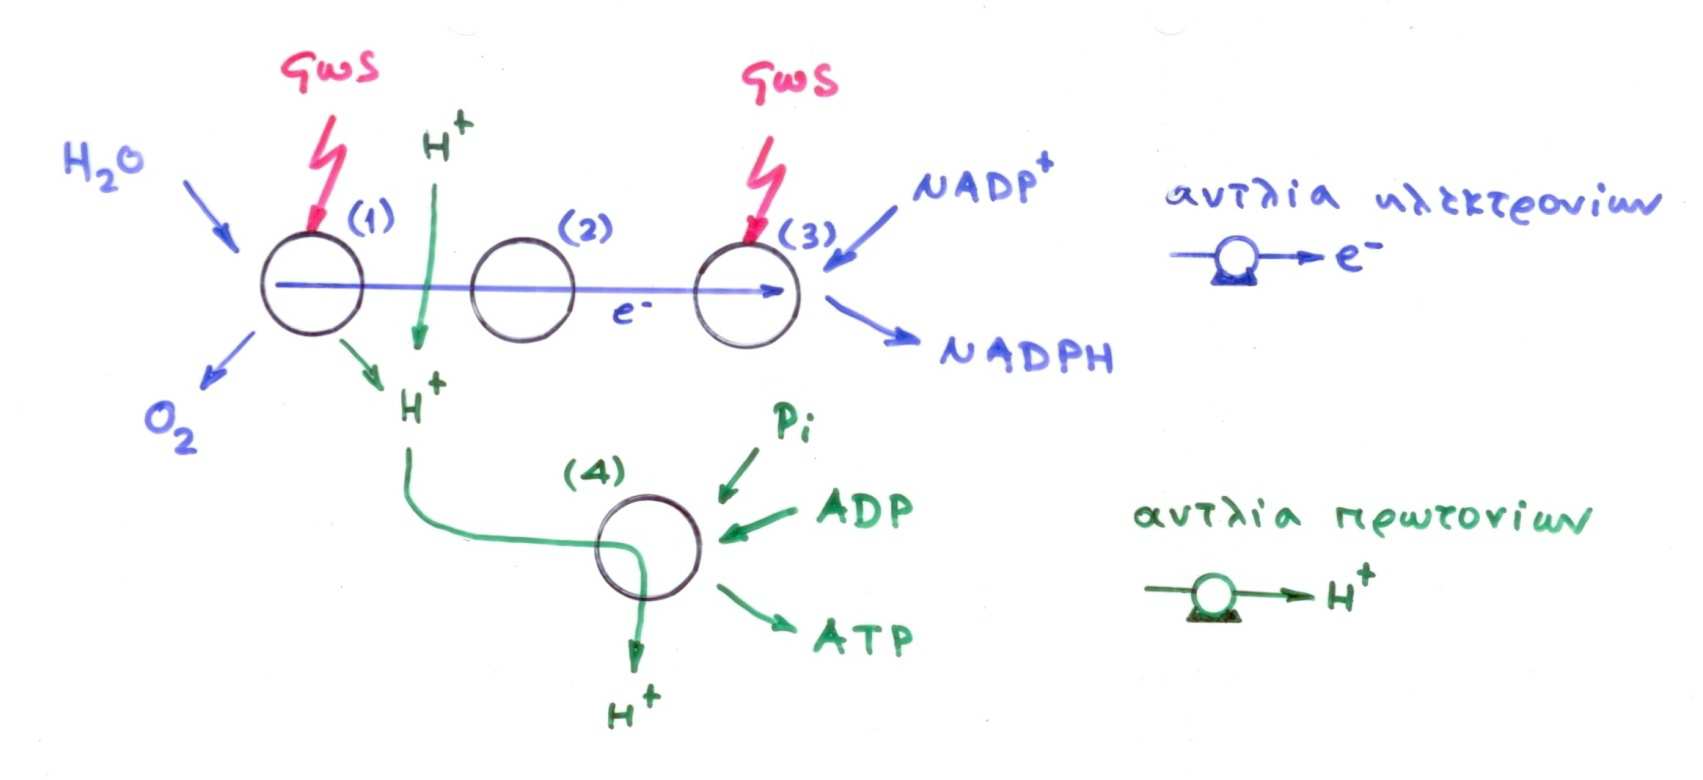 Το σύστηµα µετατροπής της φωτεινής ενέργειας σε χηµική παράγει NADPH και ΑΤΡ όταν